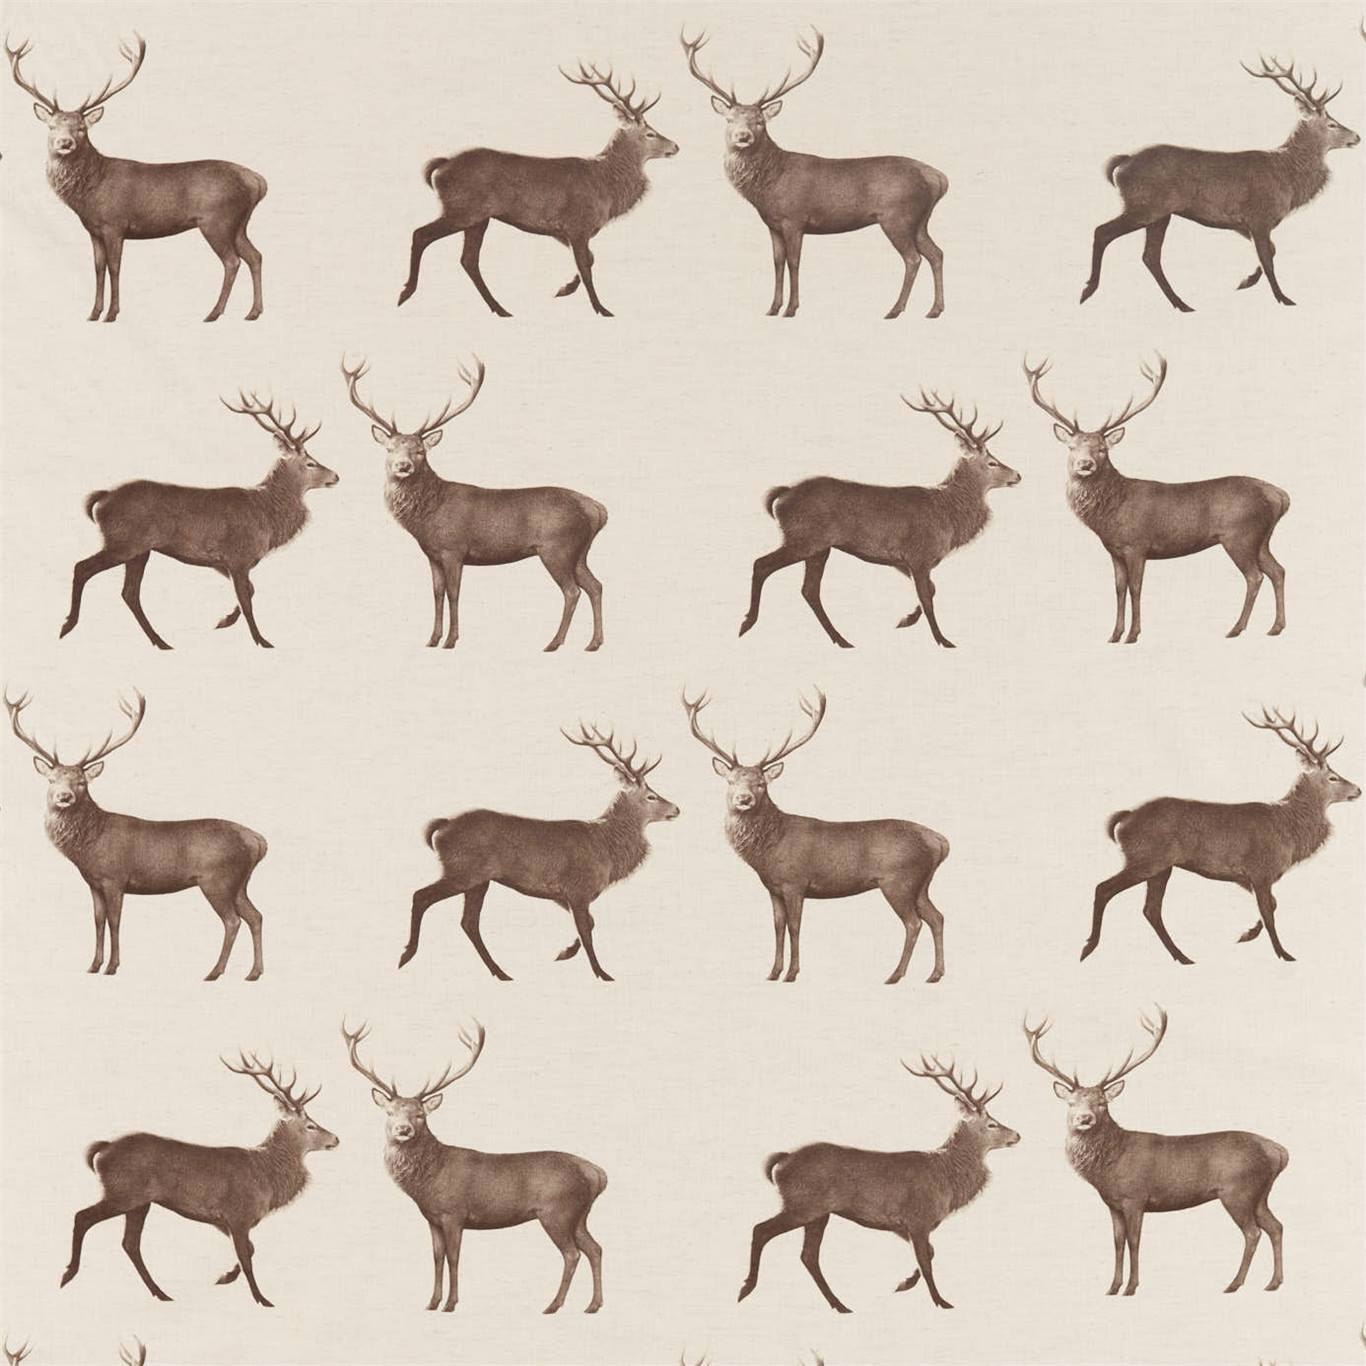 Evesham Deer Fabric by Sanderson